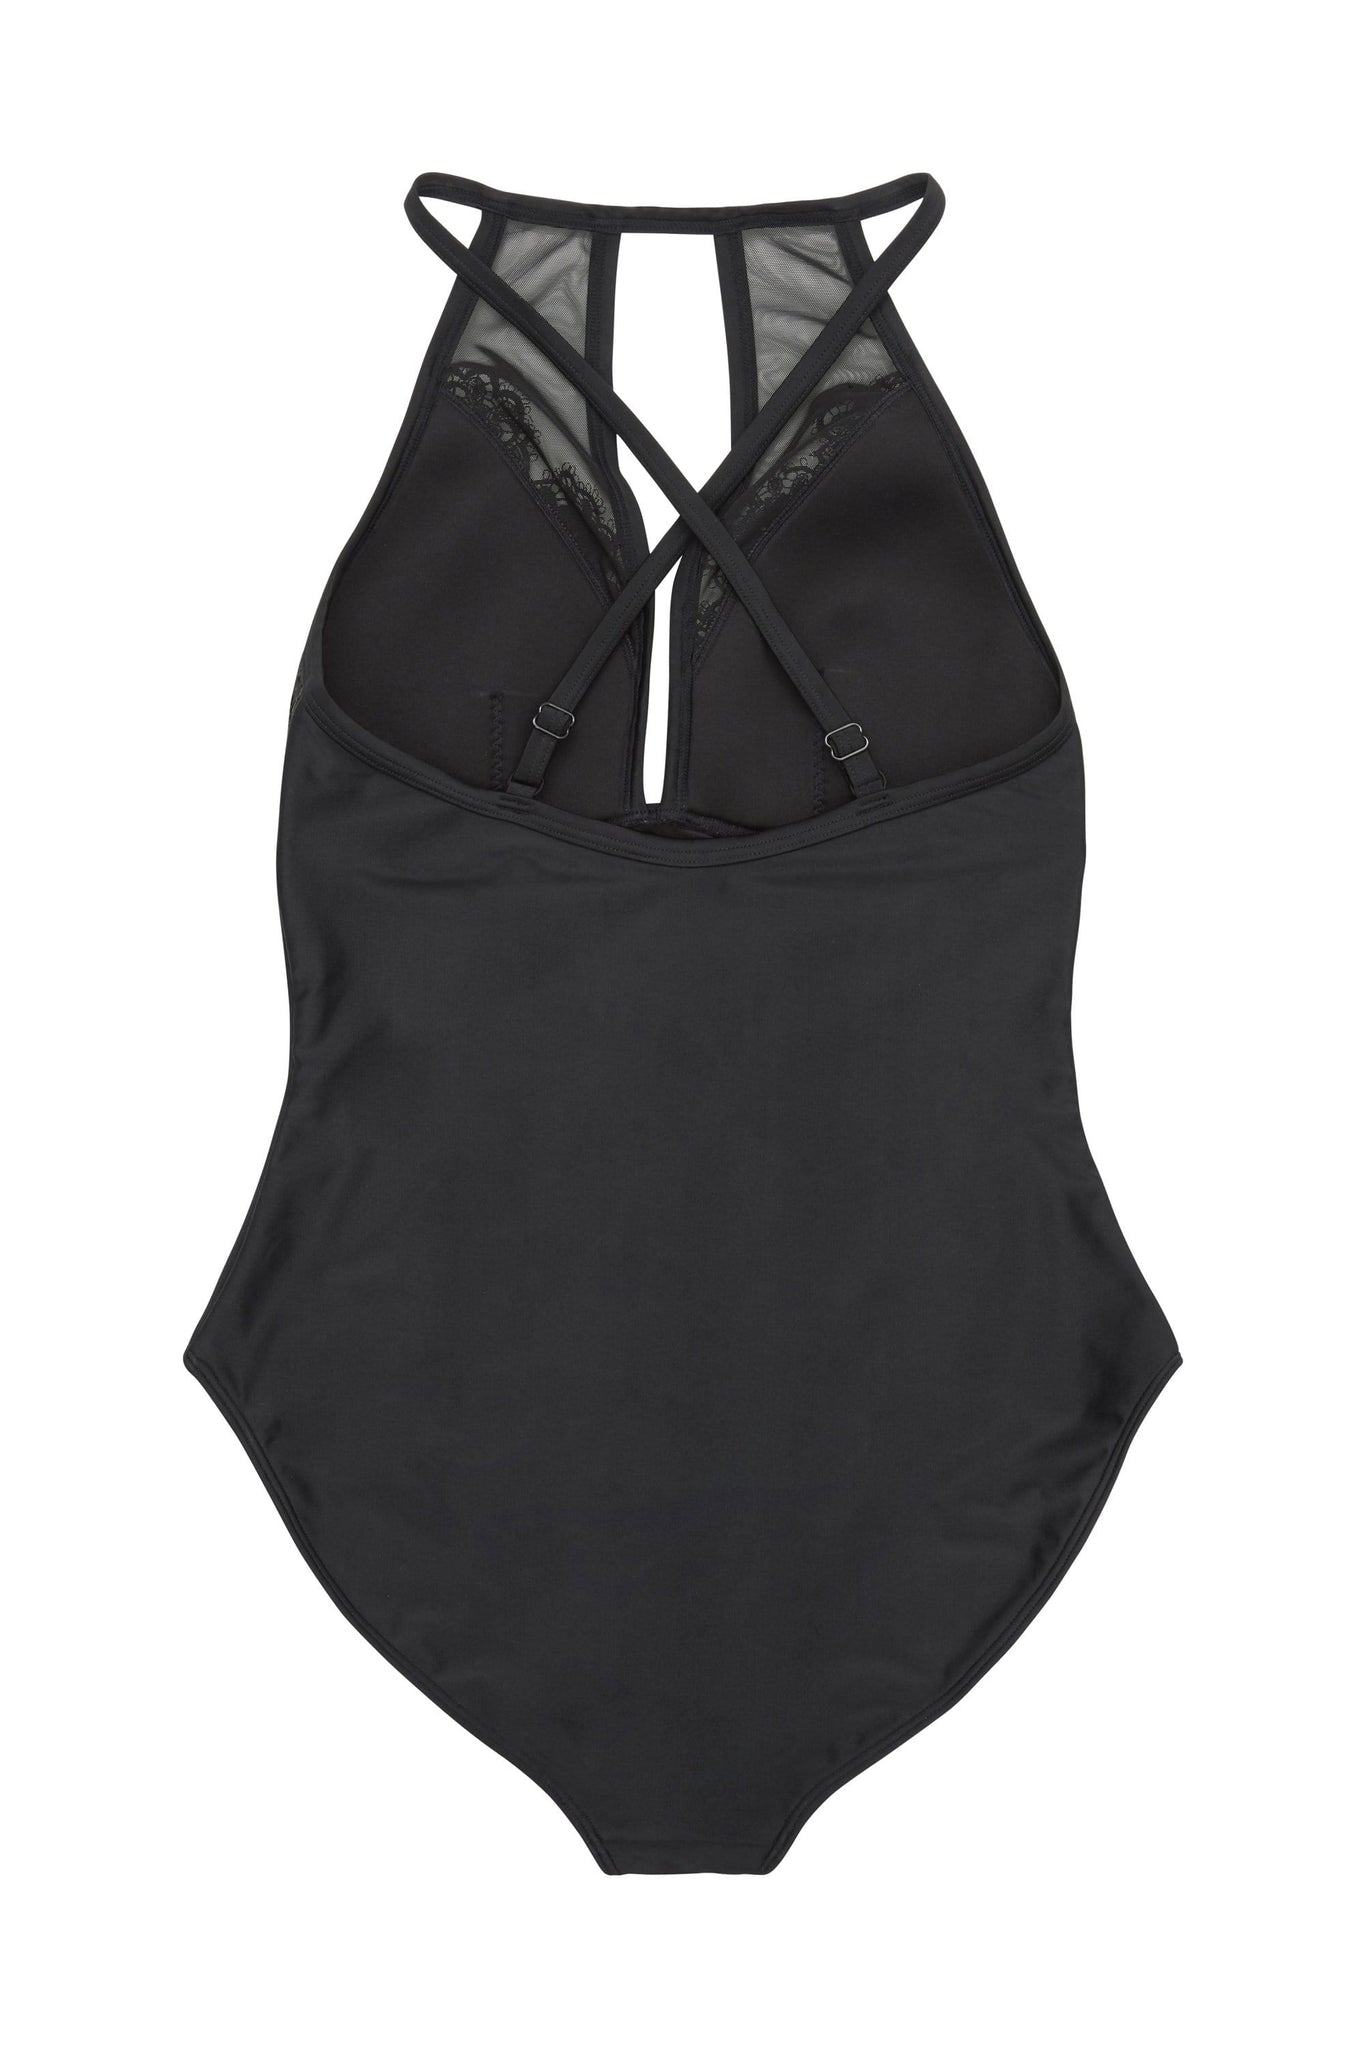 Hunter McGrady Plus Size/Curve Black High Neck Lace Panel Swimsuit ...